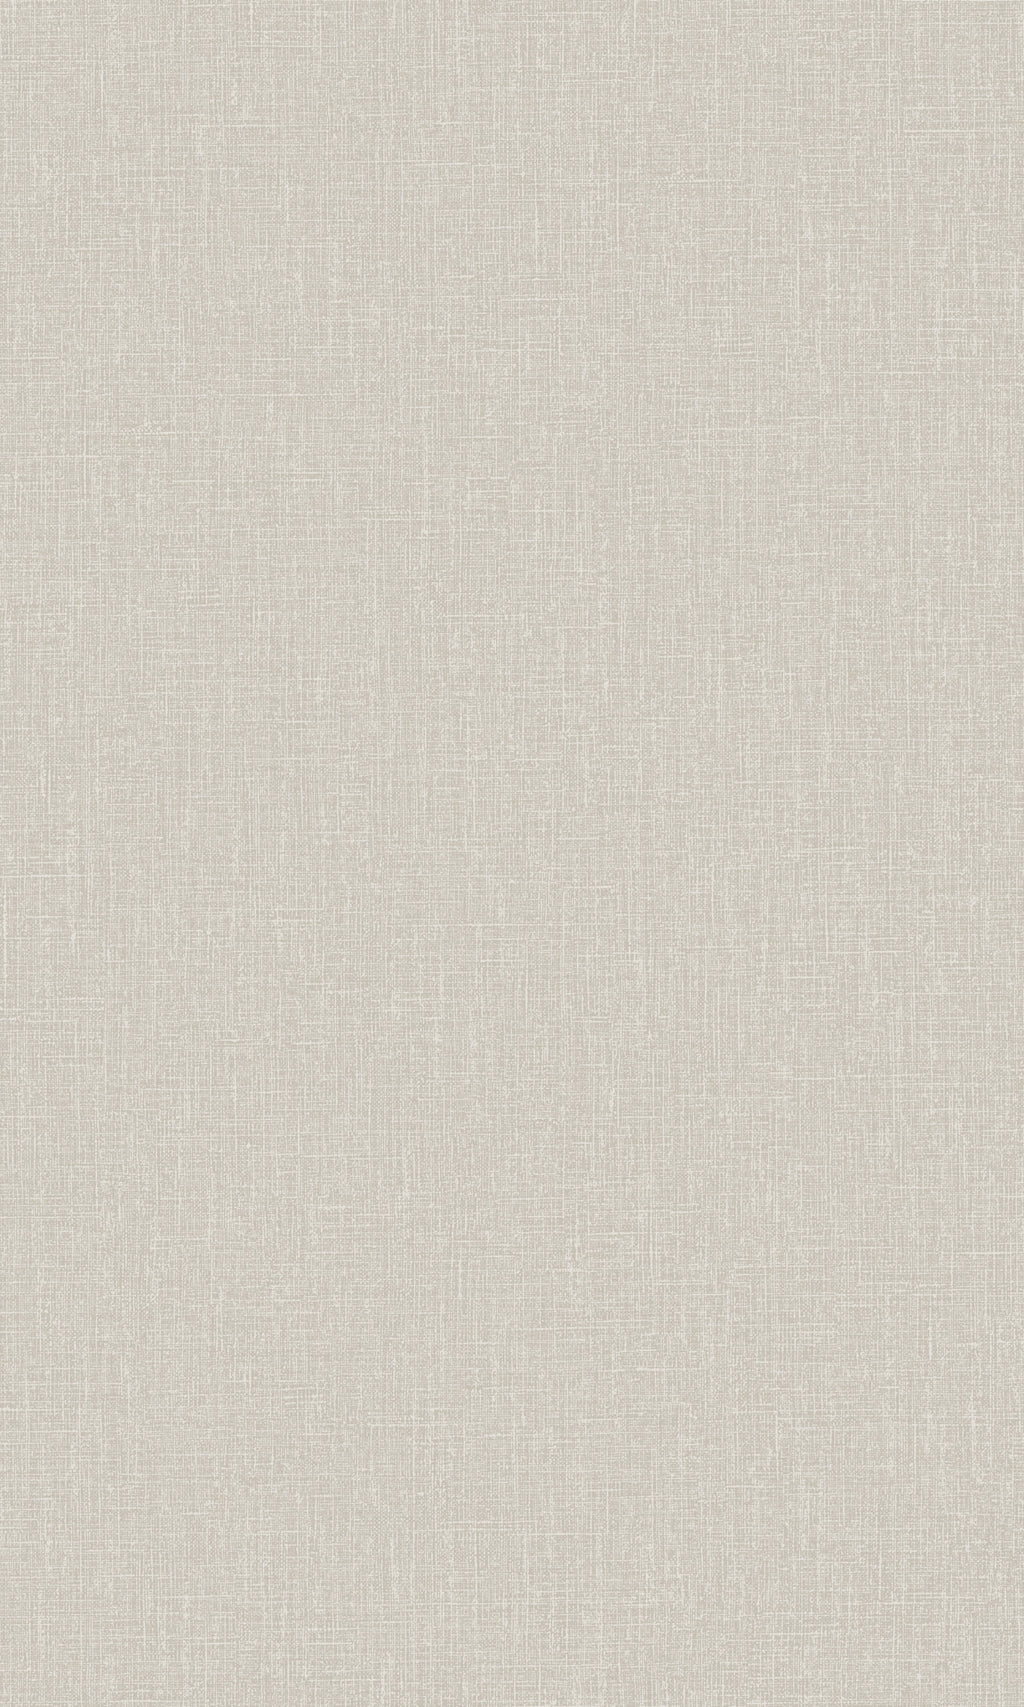 Griege Textured Plain Textile Wallpaper R8746